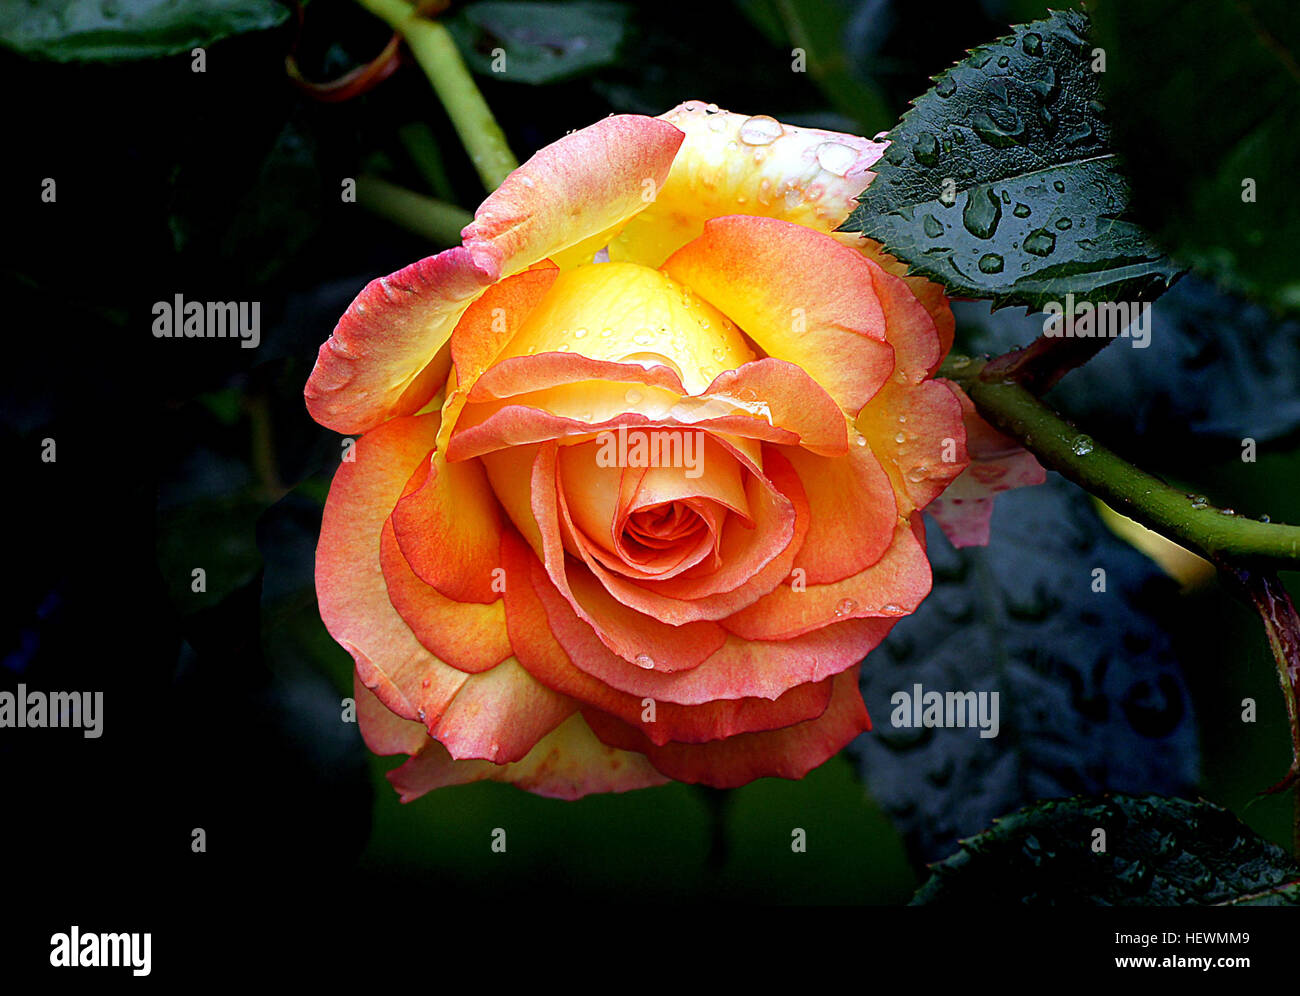 Solitaire Anno: 1987 Hybrid Tea Rose Altezza: 4ft più ogni ora e di nuovo  una rosa è una razza che stimola il polso e veramente si prende l'occhio, e  questa bellezza sicuramente